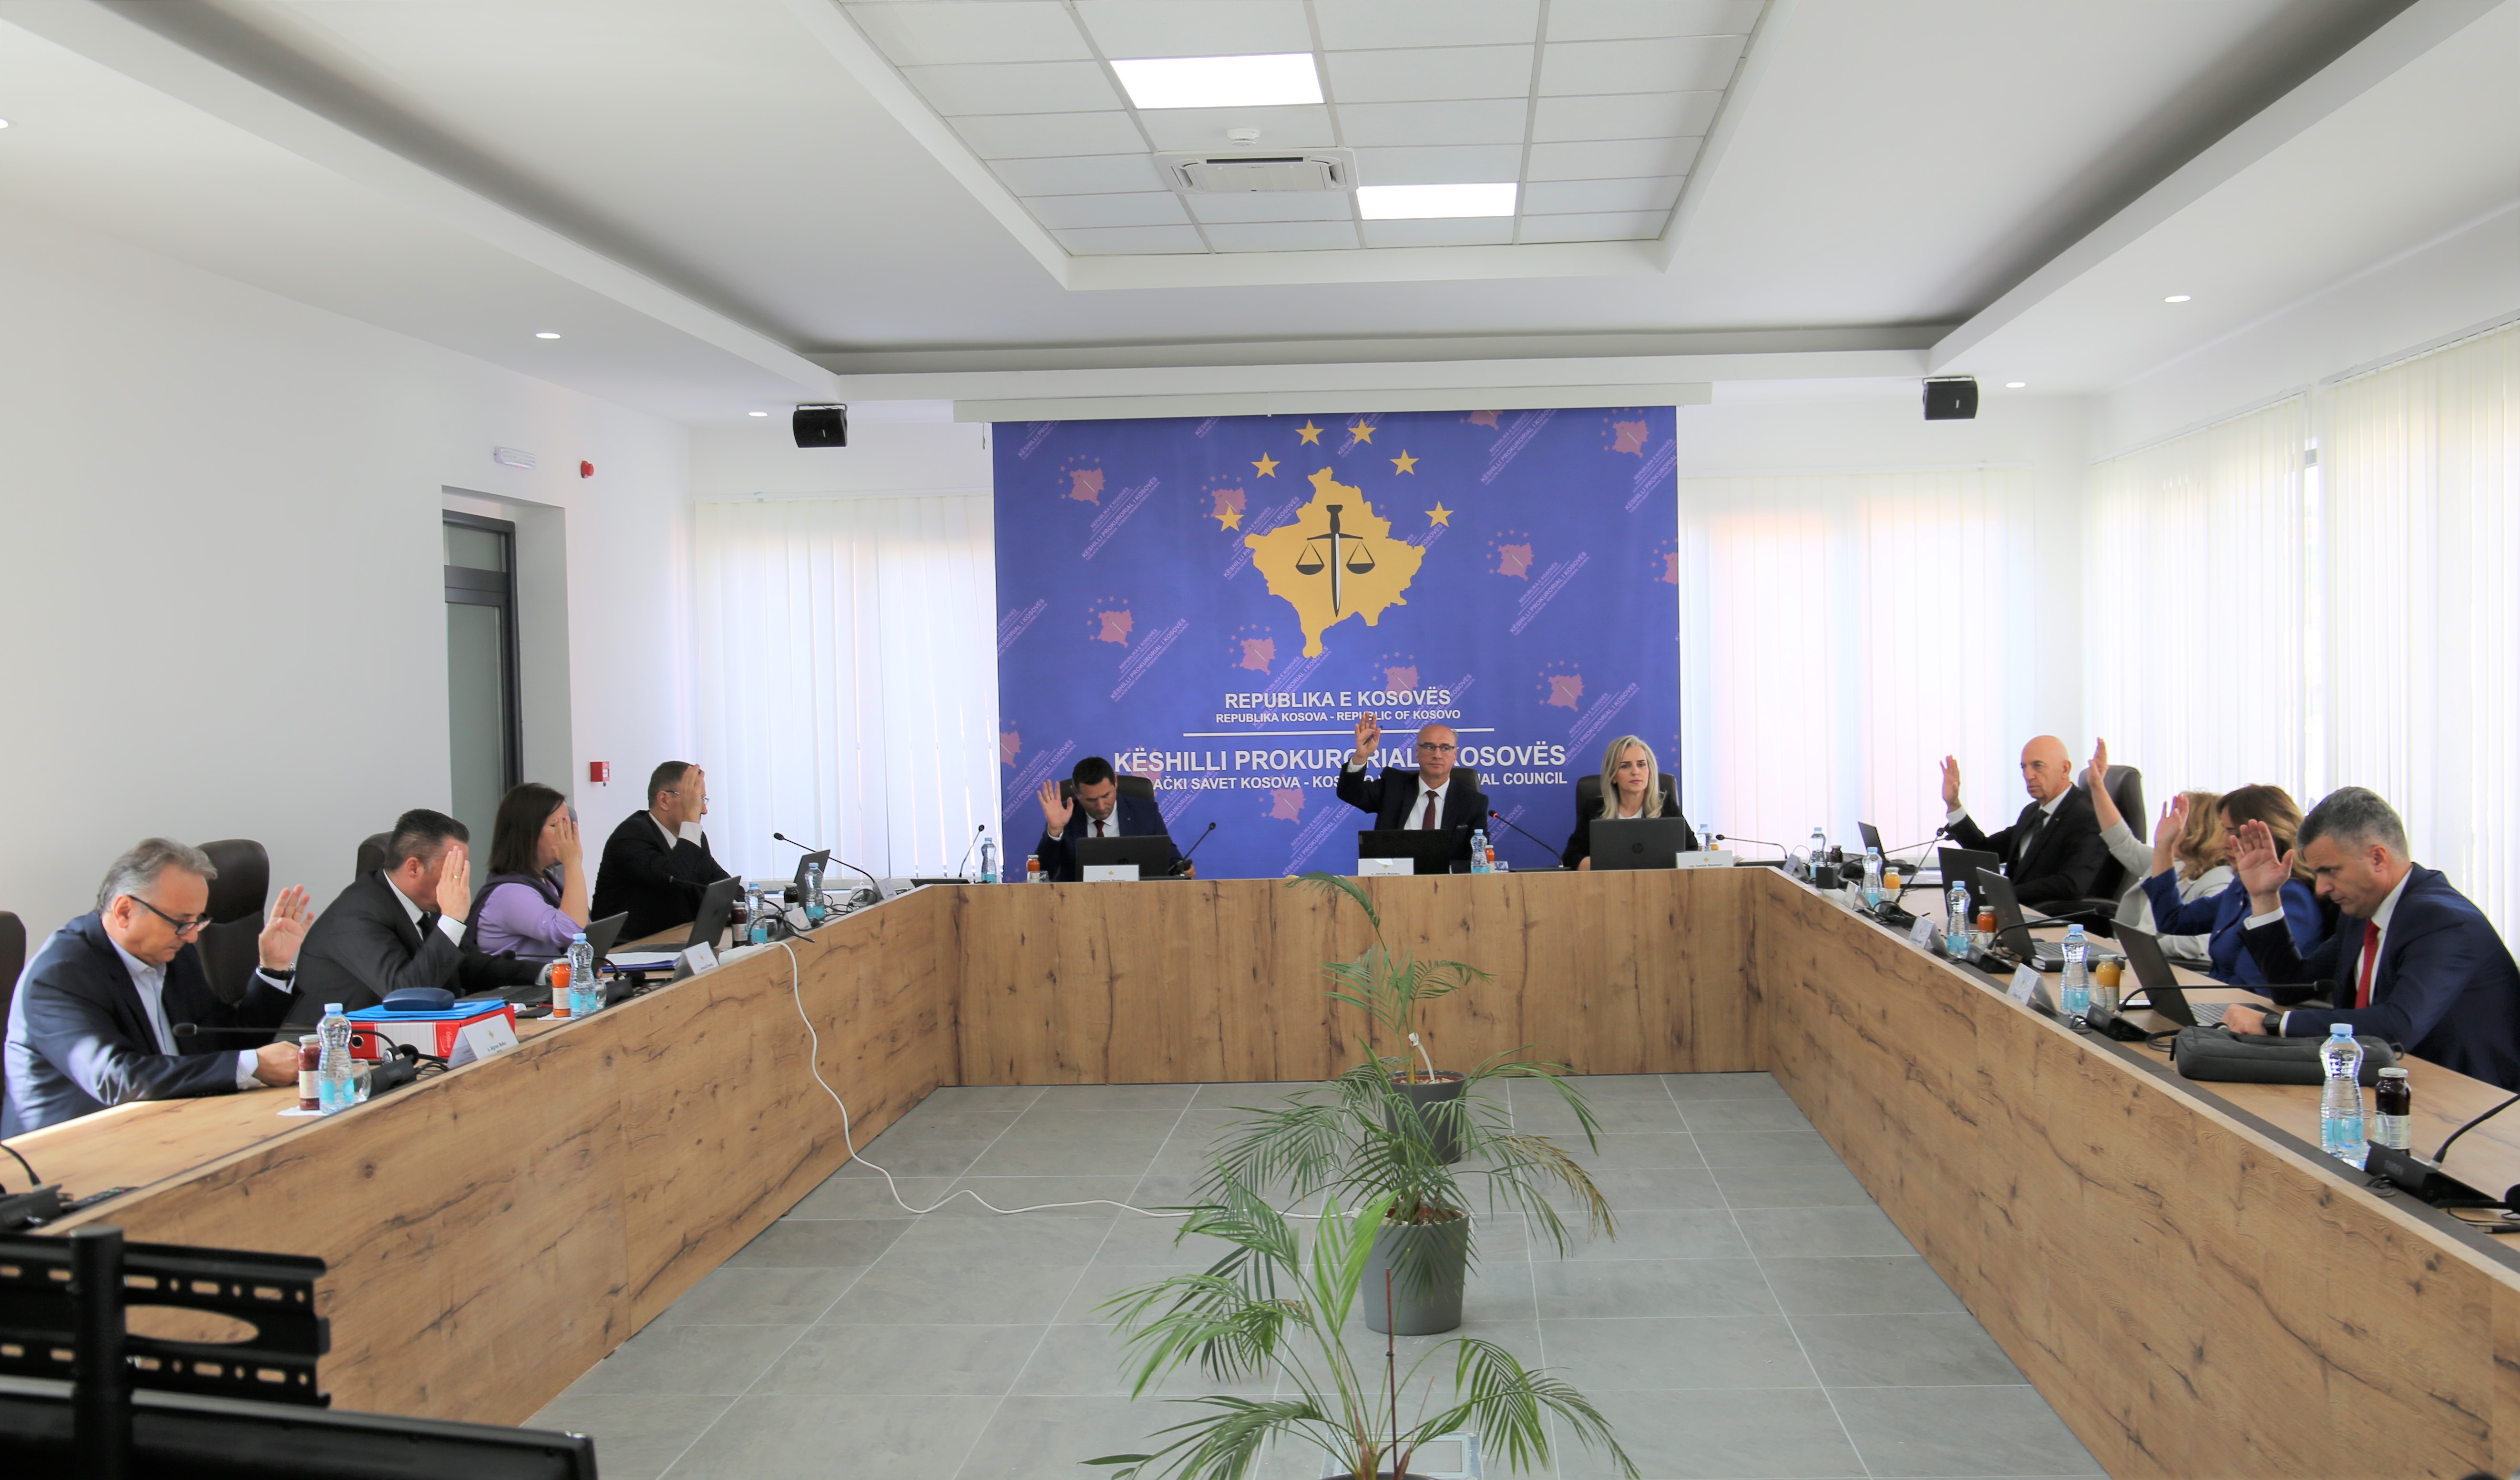 Mbahet Takimi i 234-të i Këshillit Prokurorial të Kosovës 